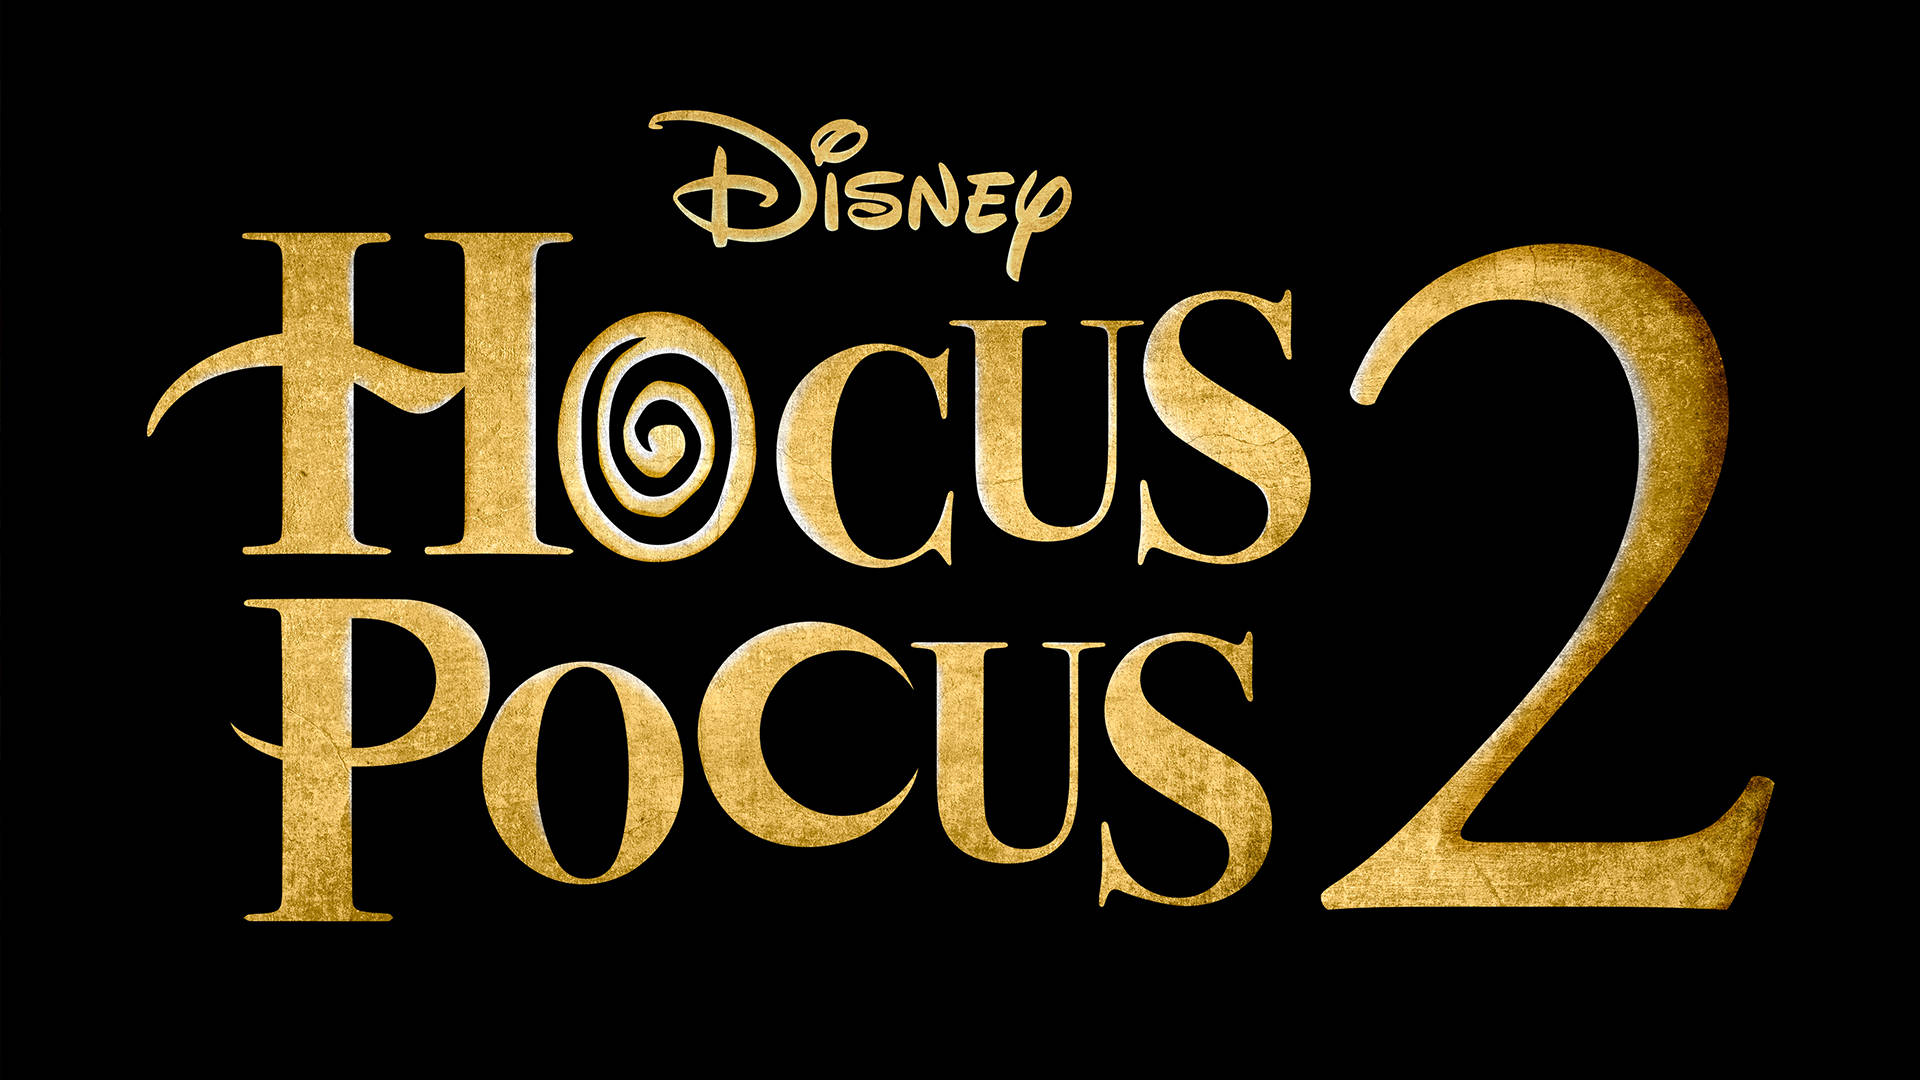 Disneyhocus Pocus Film. Wallpaper